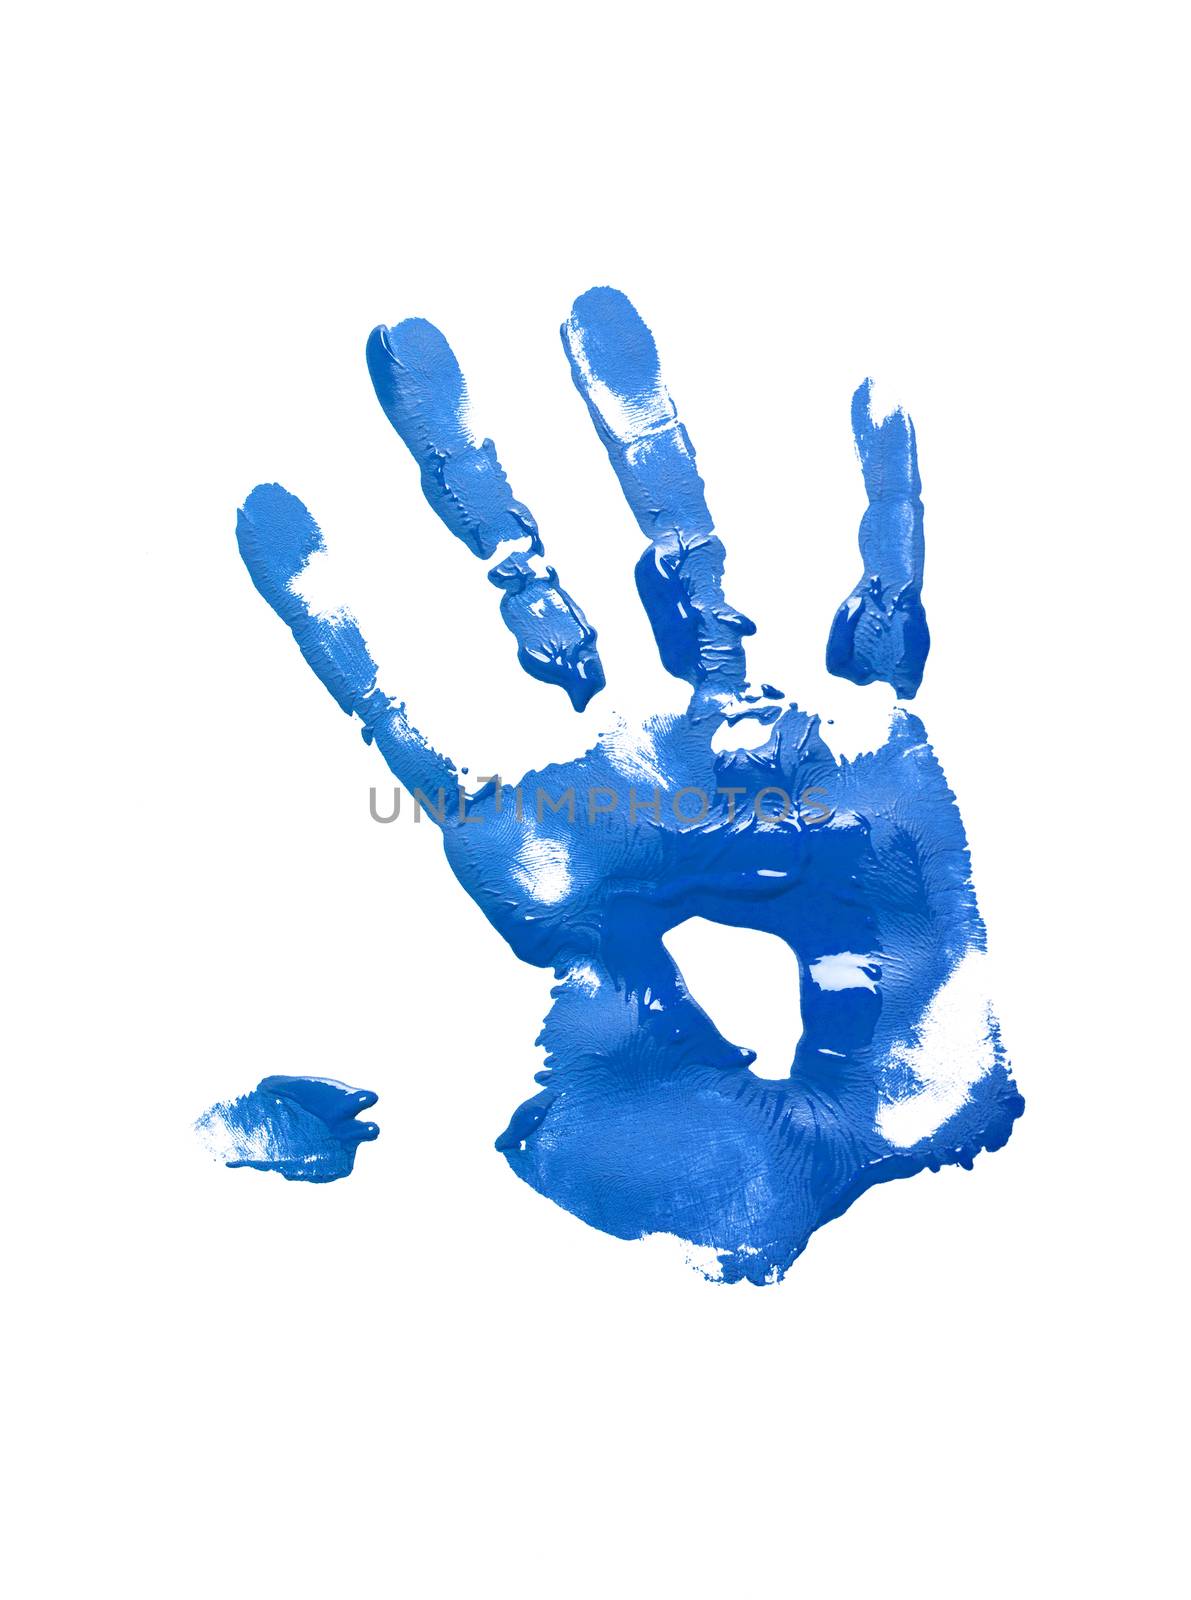 Blue handprint on white